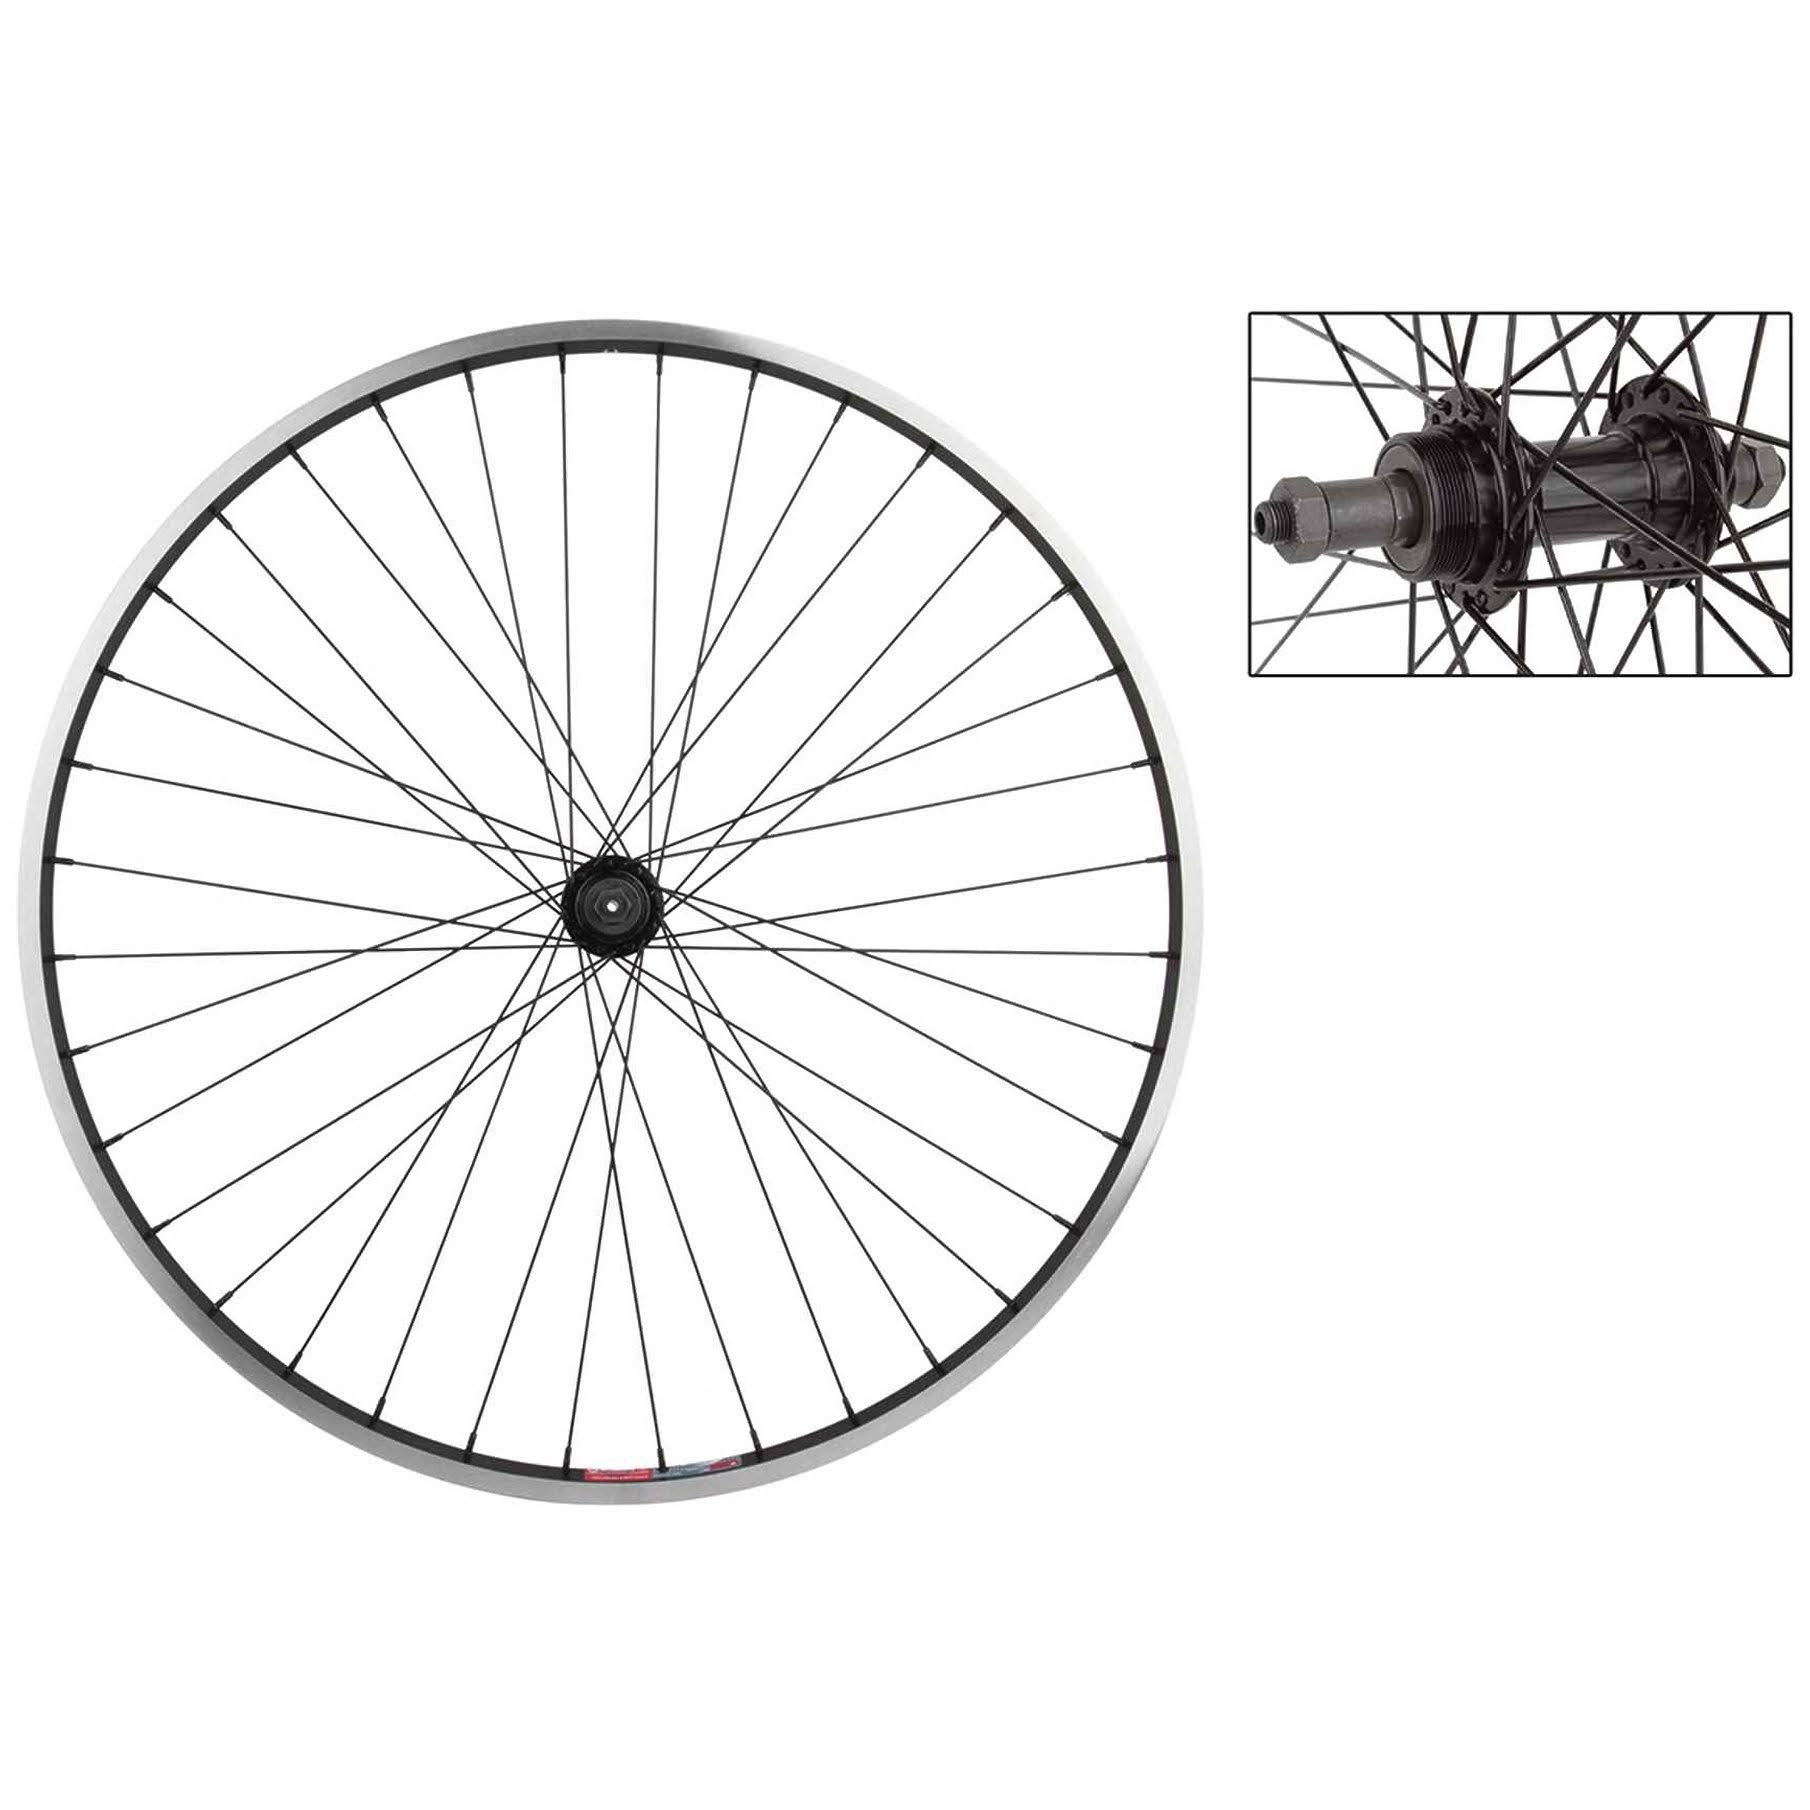 Weinmann 519 Rear Wheel - Black, 700c x 35, 5-7 Speed, 36H, QR Freewheel